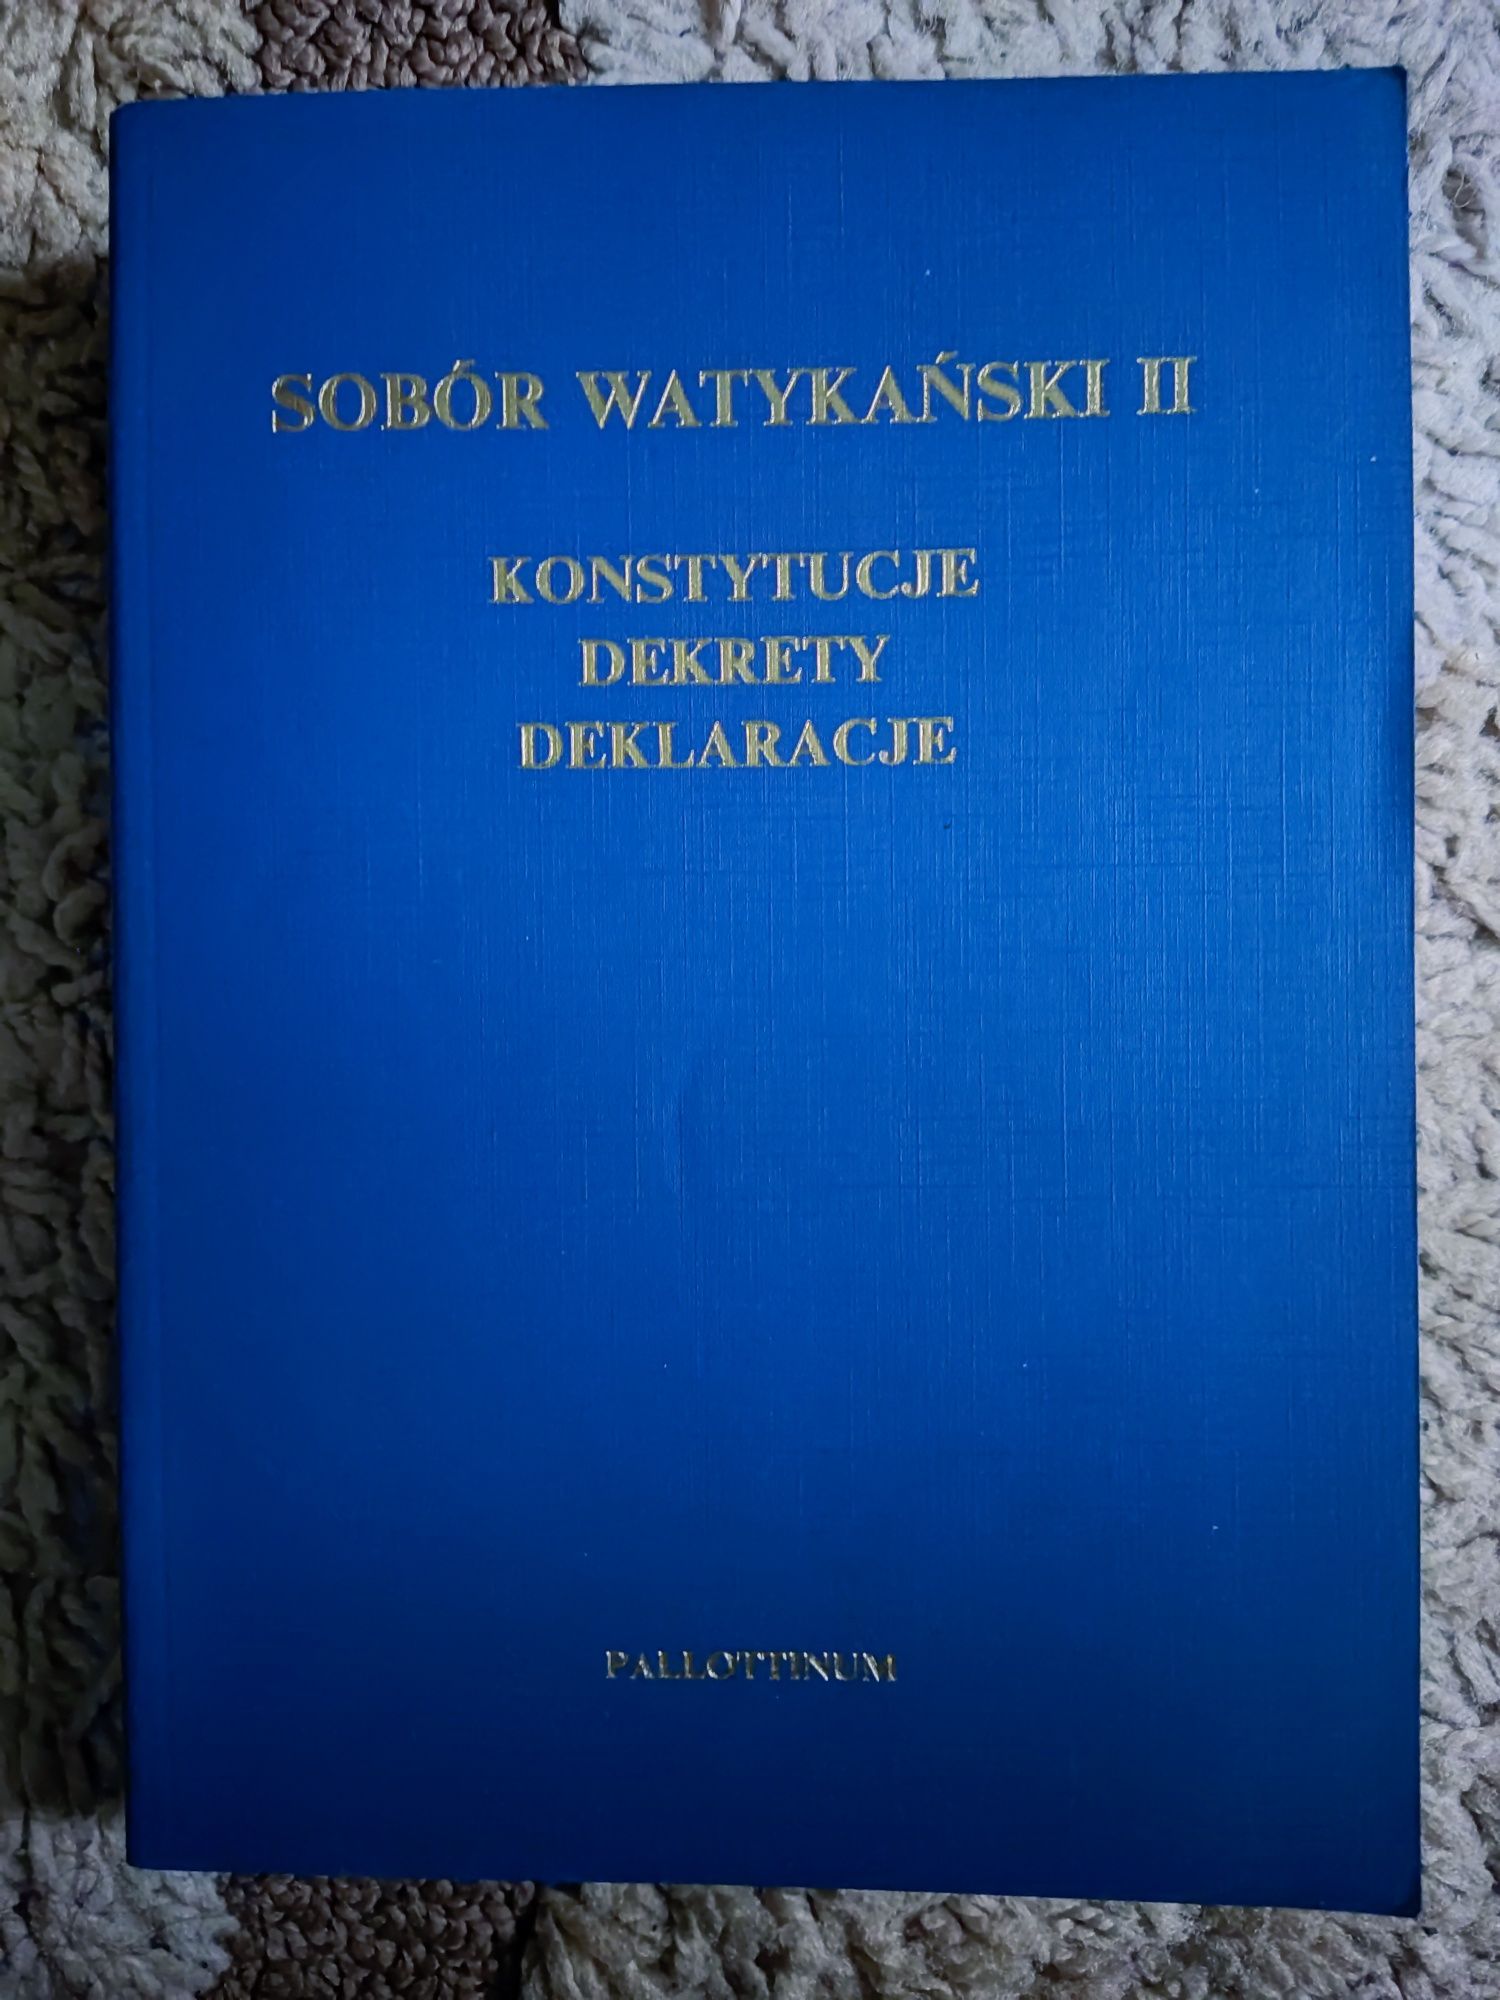 Sobór Watykański II konstytucje dekrety deklaracje